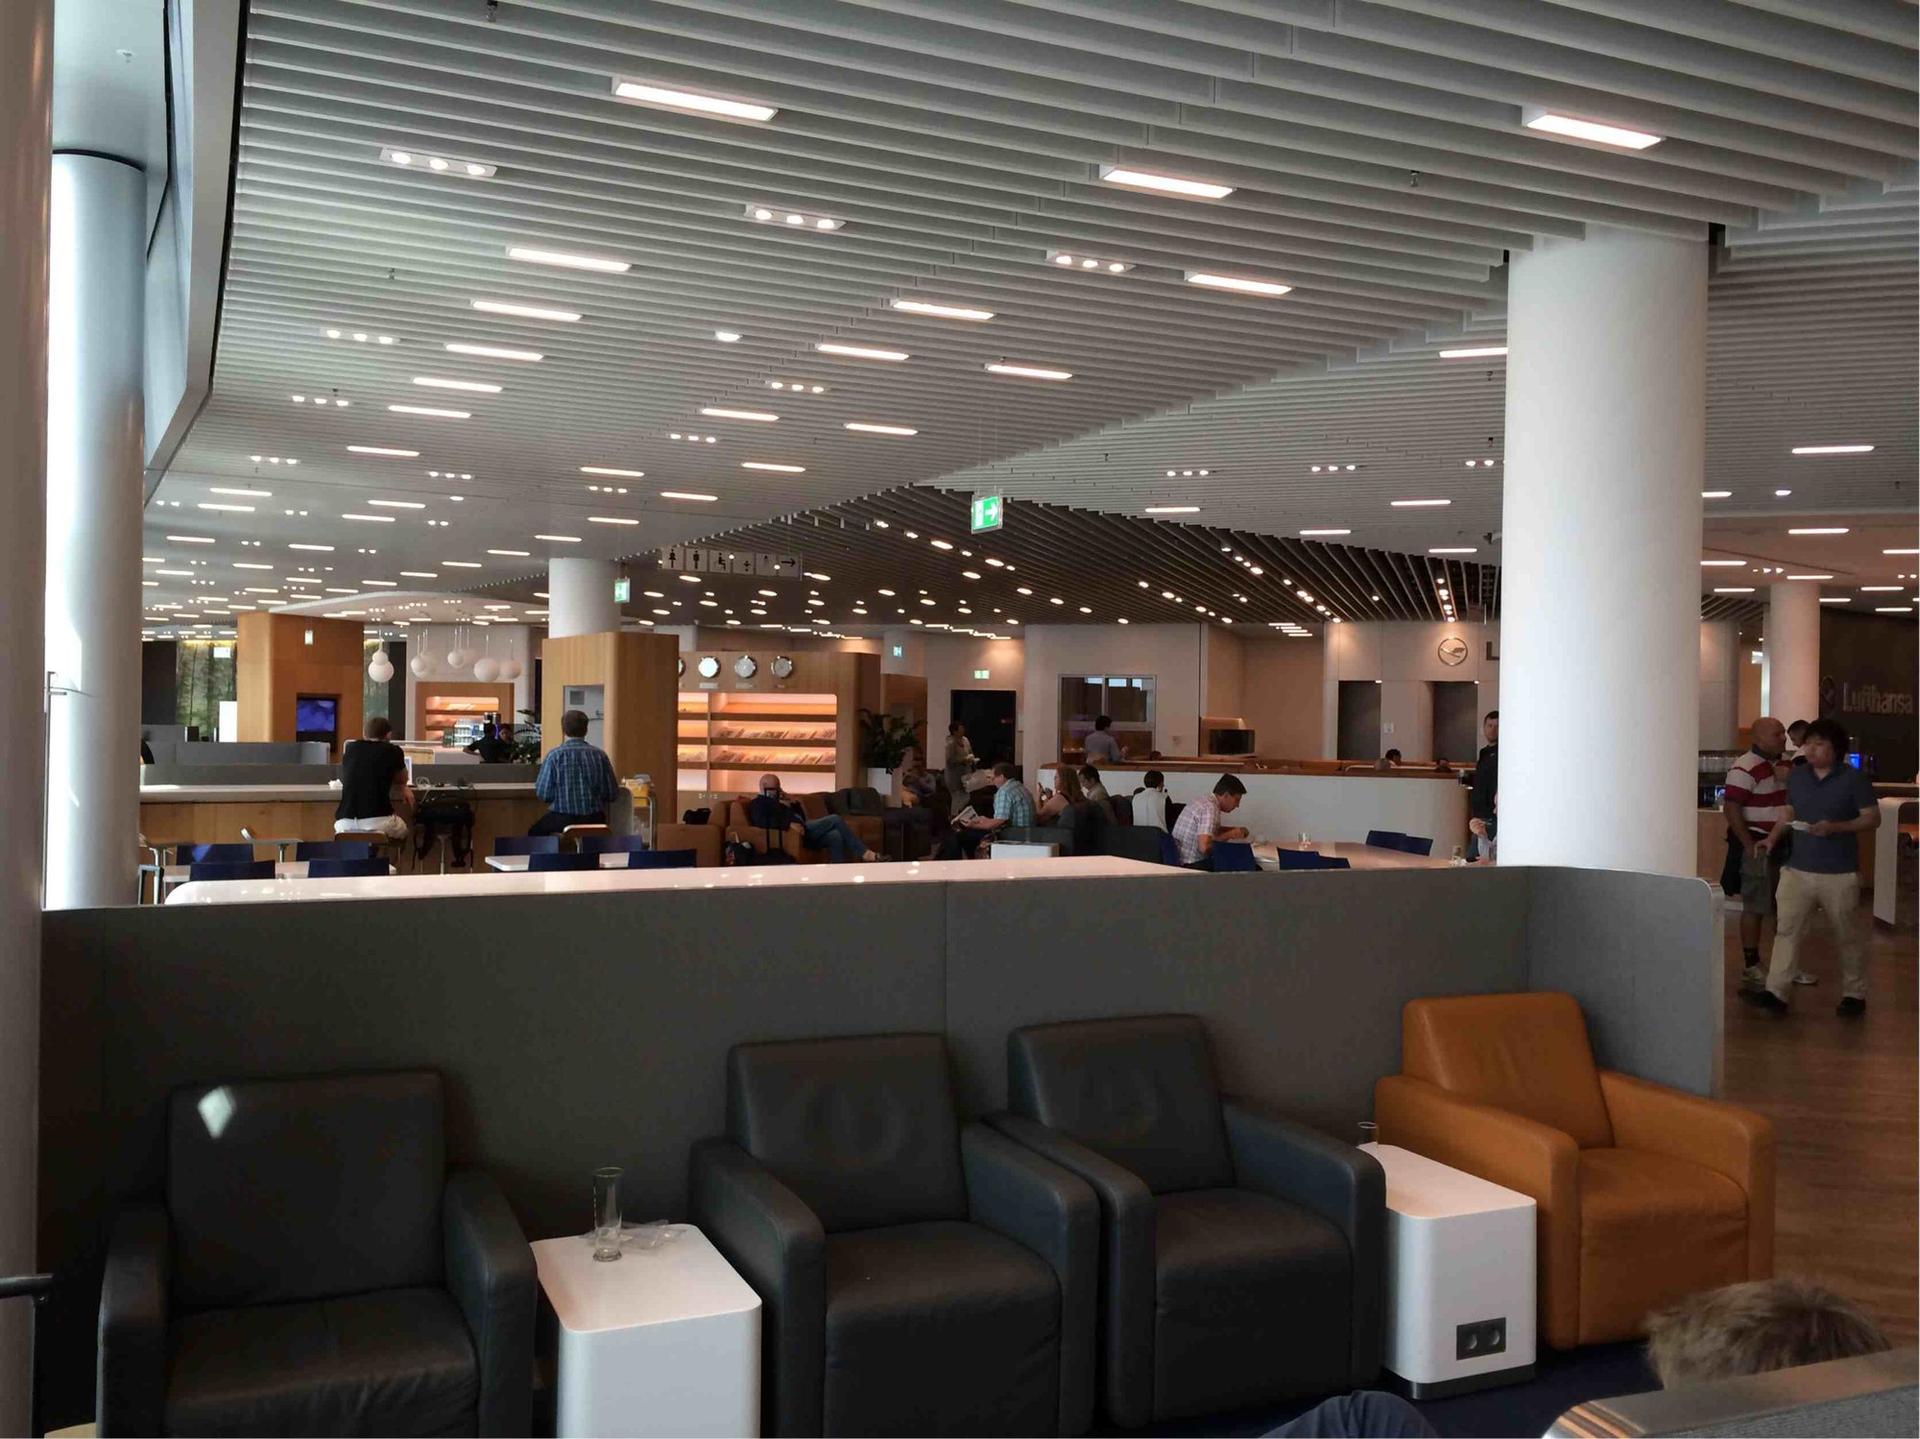 Lufthansa Business Lounge (Non-Schengen) image 11 of 14